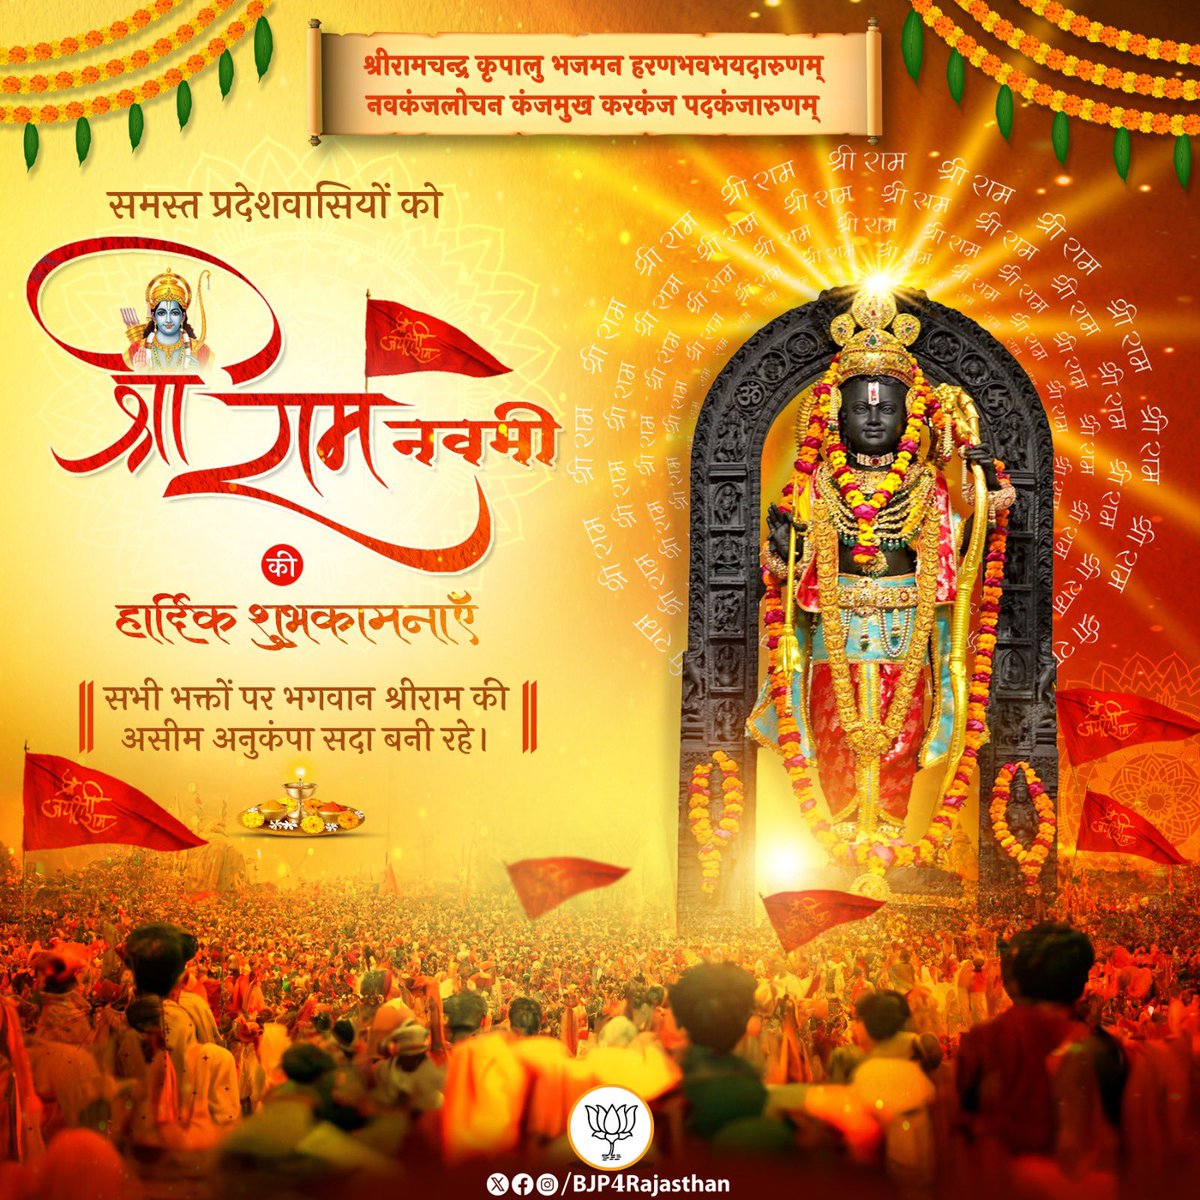 मर्यादा पुरुषोत्तम प्रभु श्रीराम जी के जन्मोत्सव के पावन पर्व 'रामनवमी' की आप सभी को ढेर सारी शुभकामनाएँ। सभी रामभक्तों पर भगवान श्रीराम जी की असीम अनुकंपा सदा बनी रहे। #JaiShriRam #RamNavami